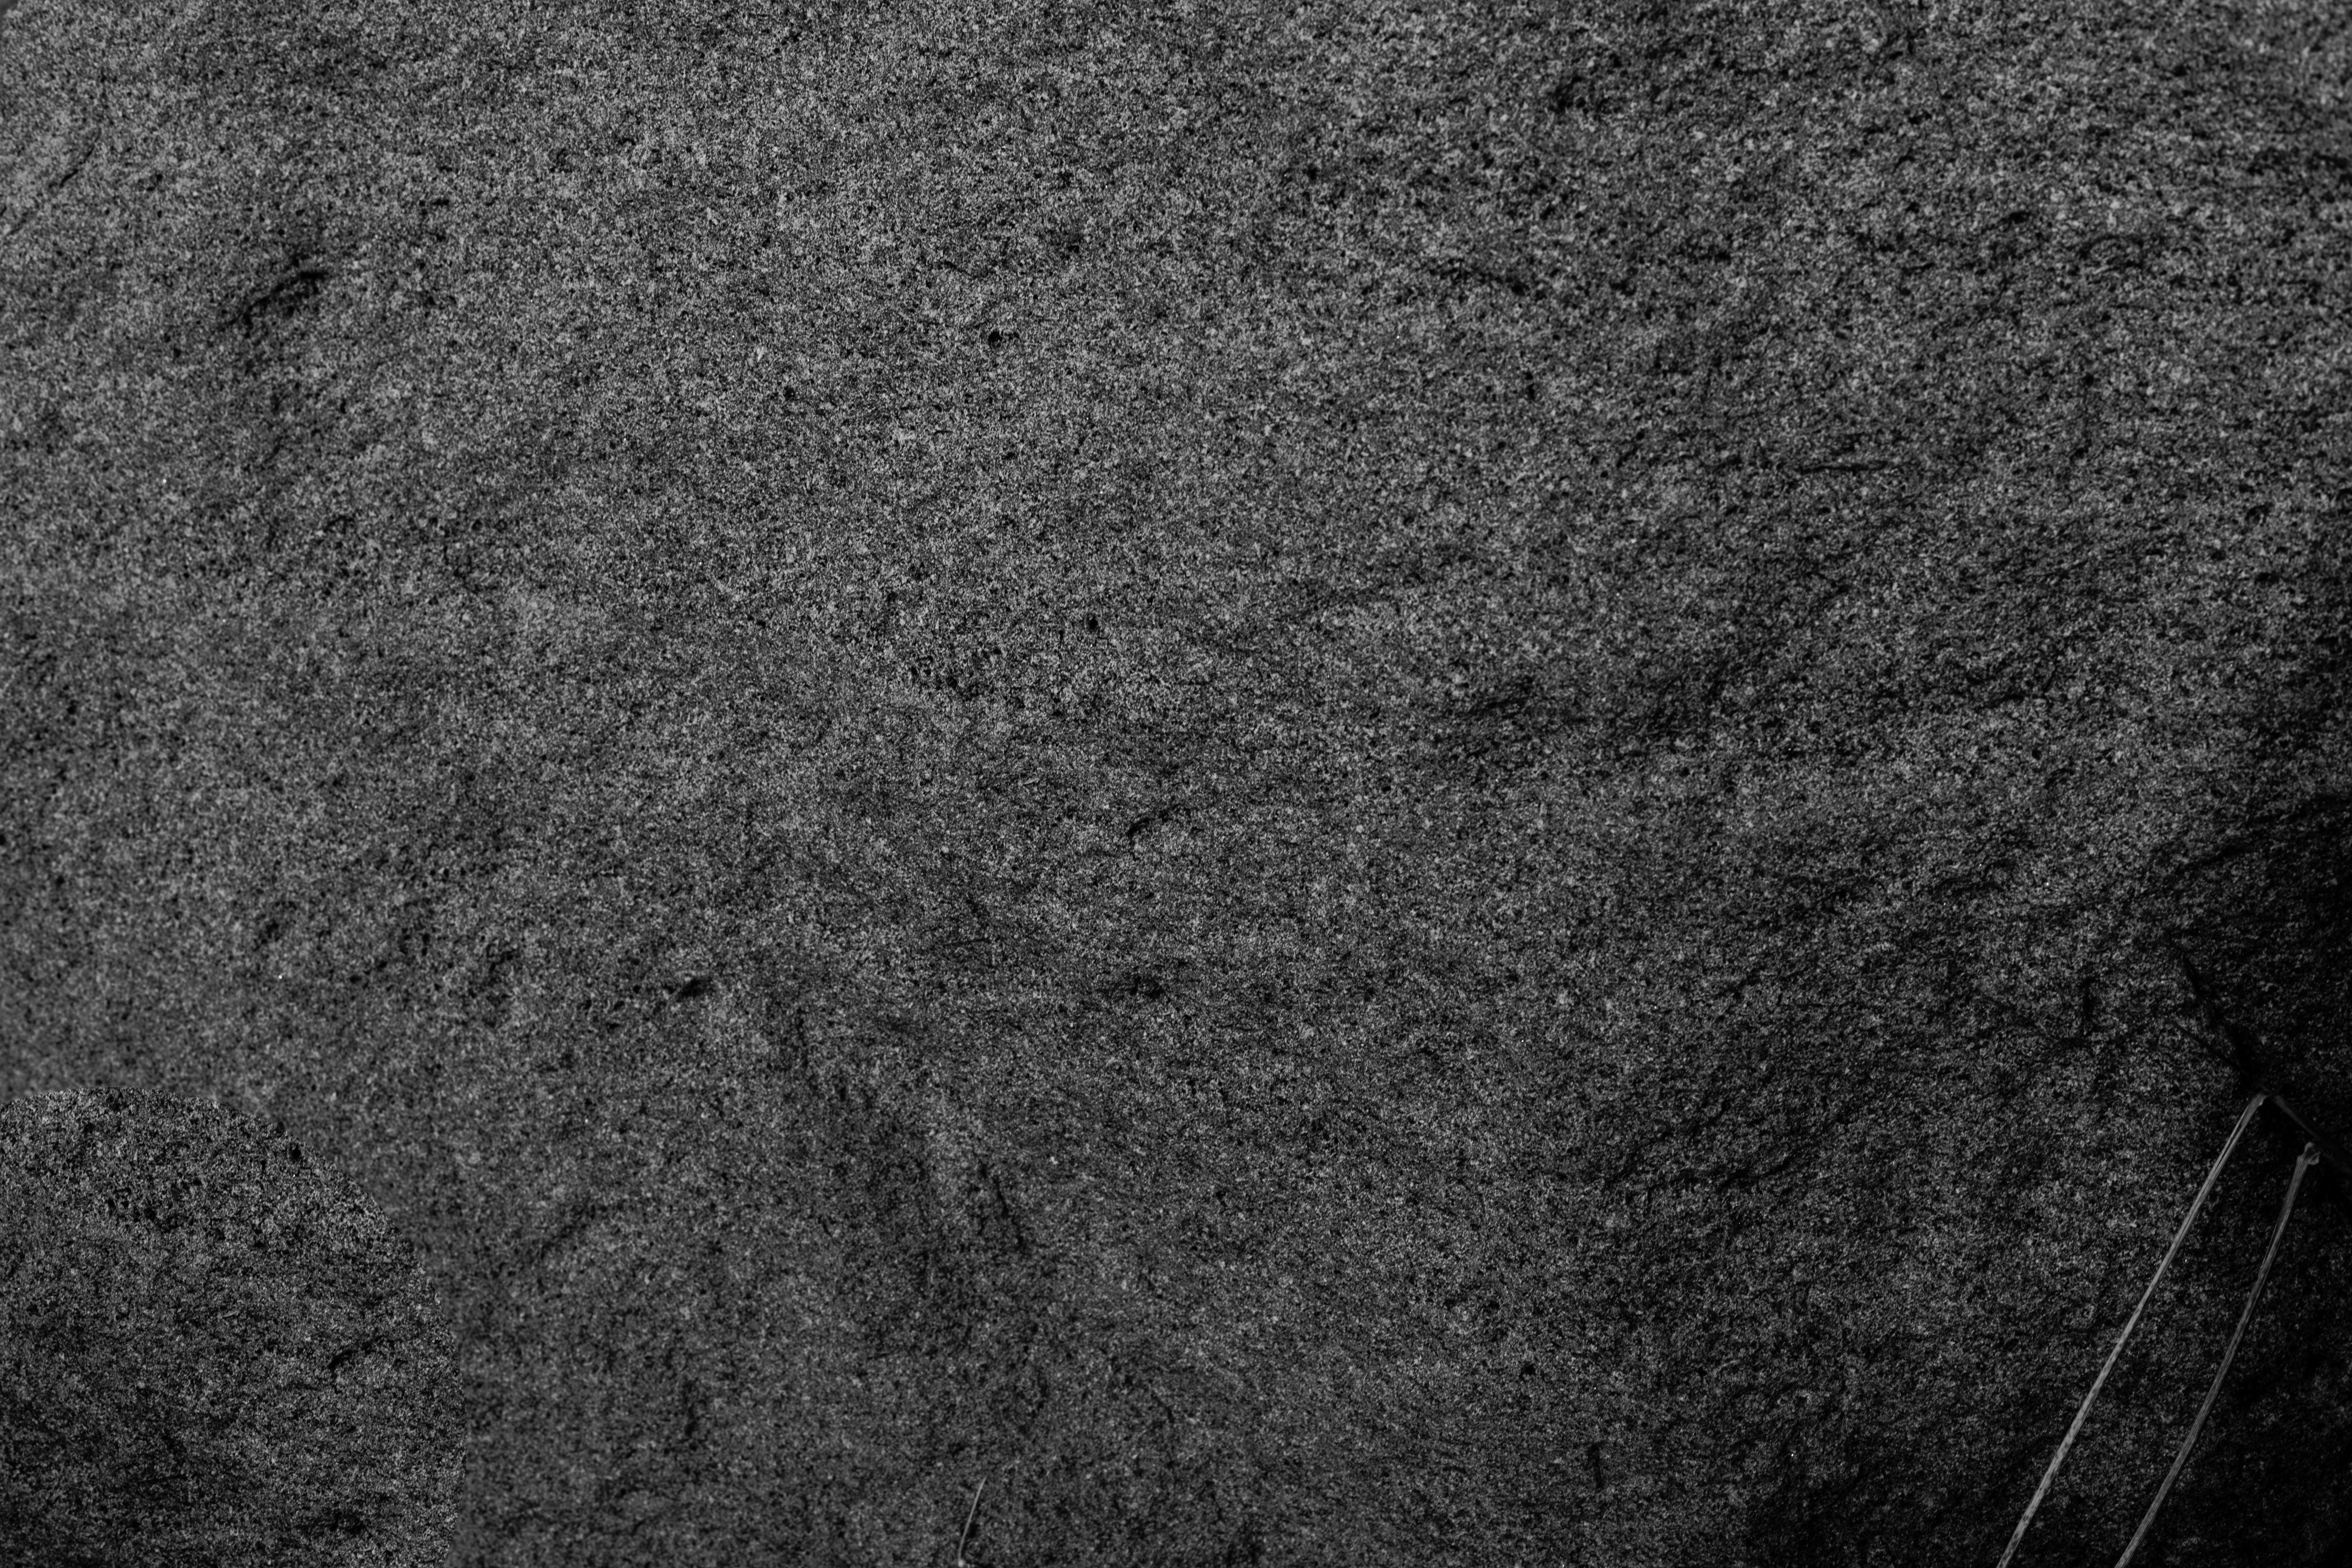 Boulder texture photo